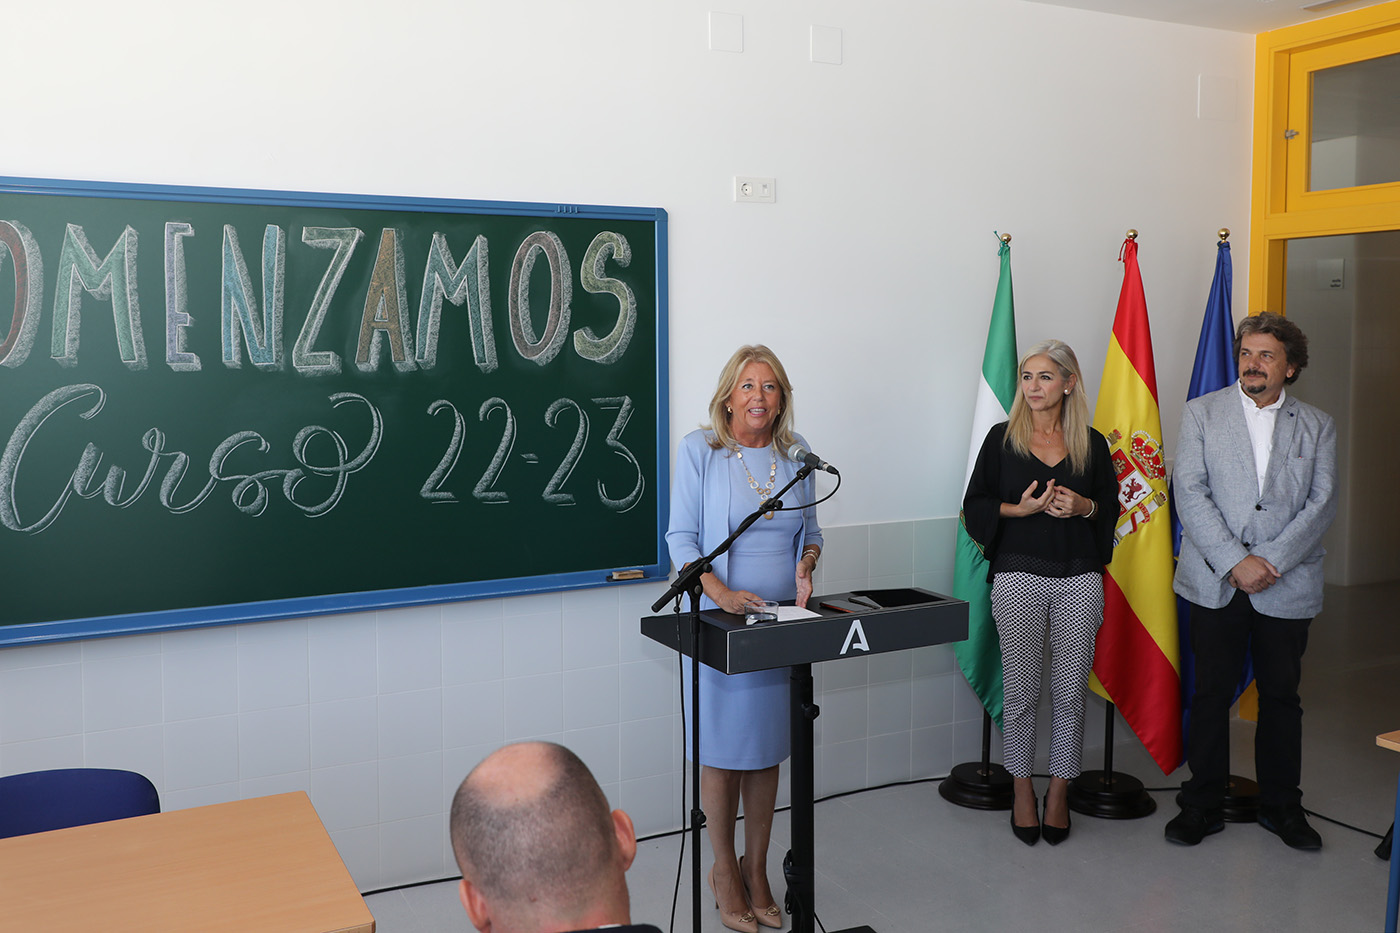 La alcaldesa subraya “la alianza entre el Ayuntamiento y la Junta de Andalucía para impulsar proyectos de envergadura para la ciudad, como el nuevo instituto de San Pedro Alcántara”